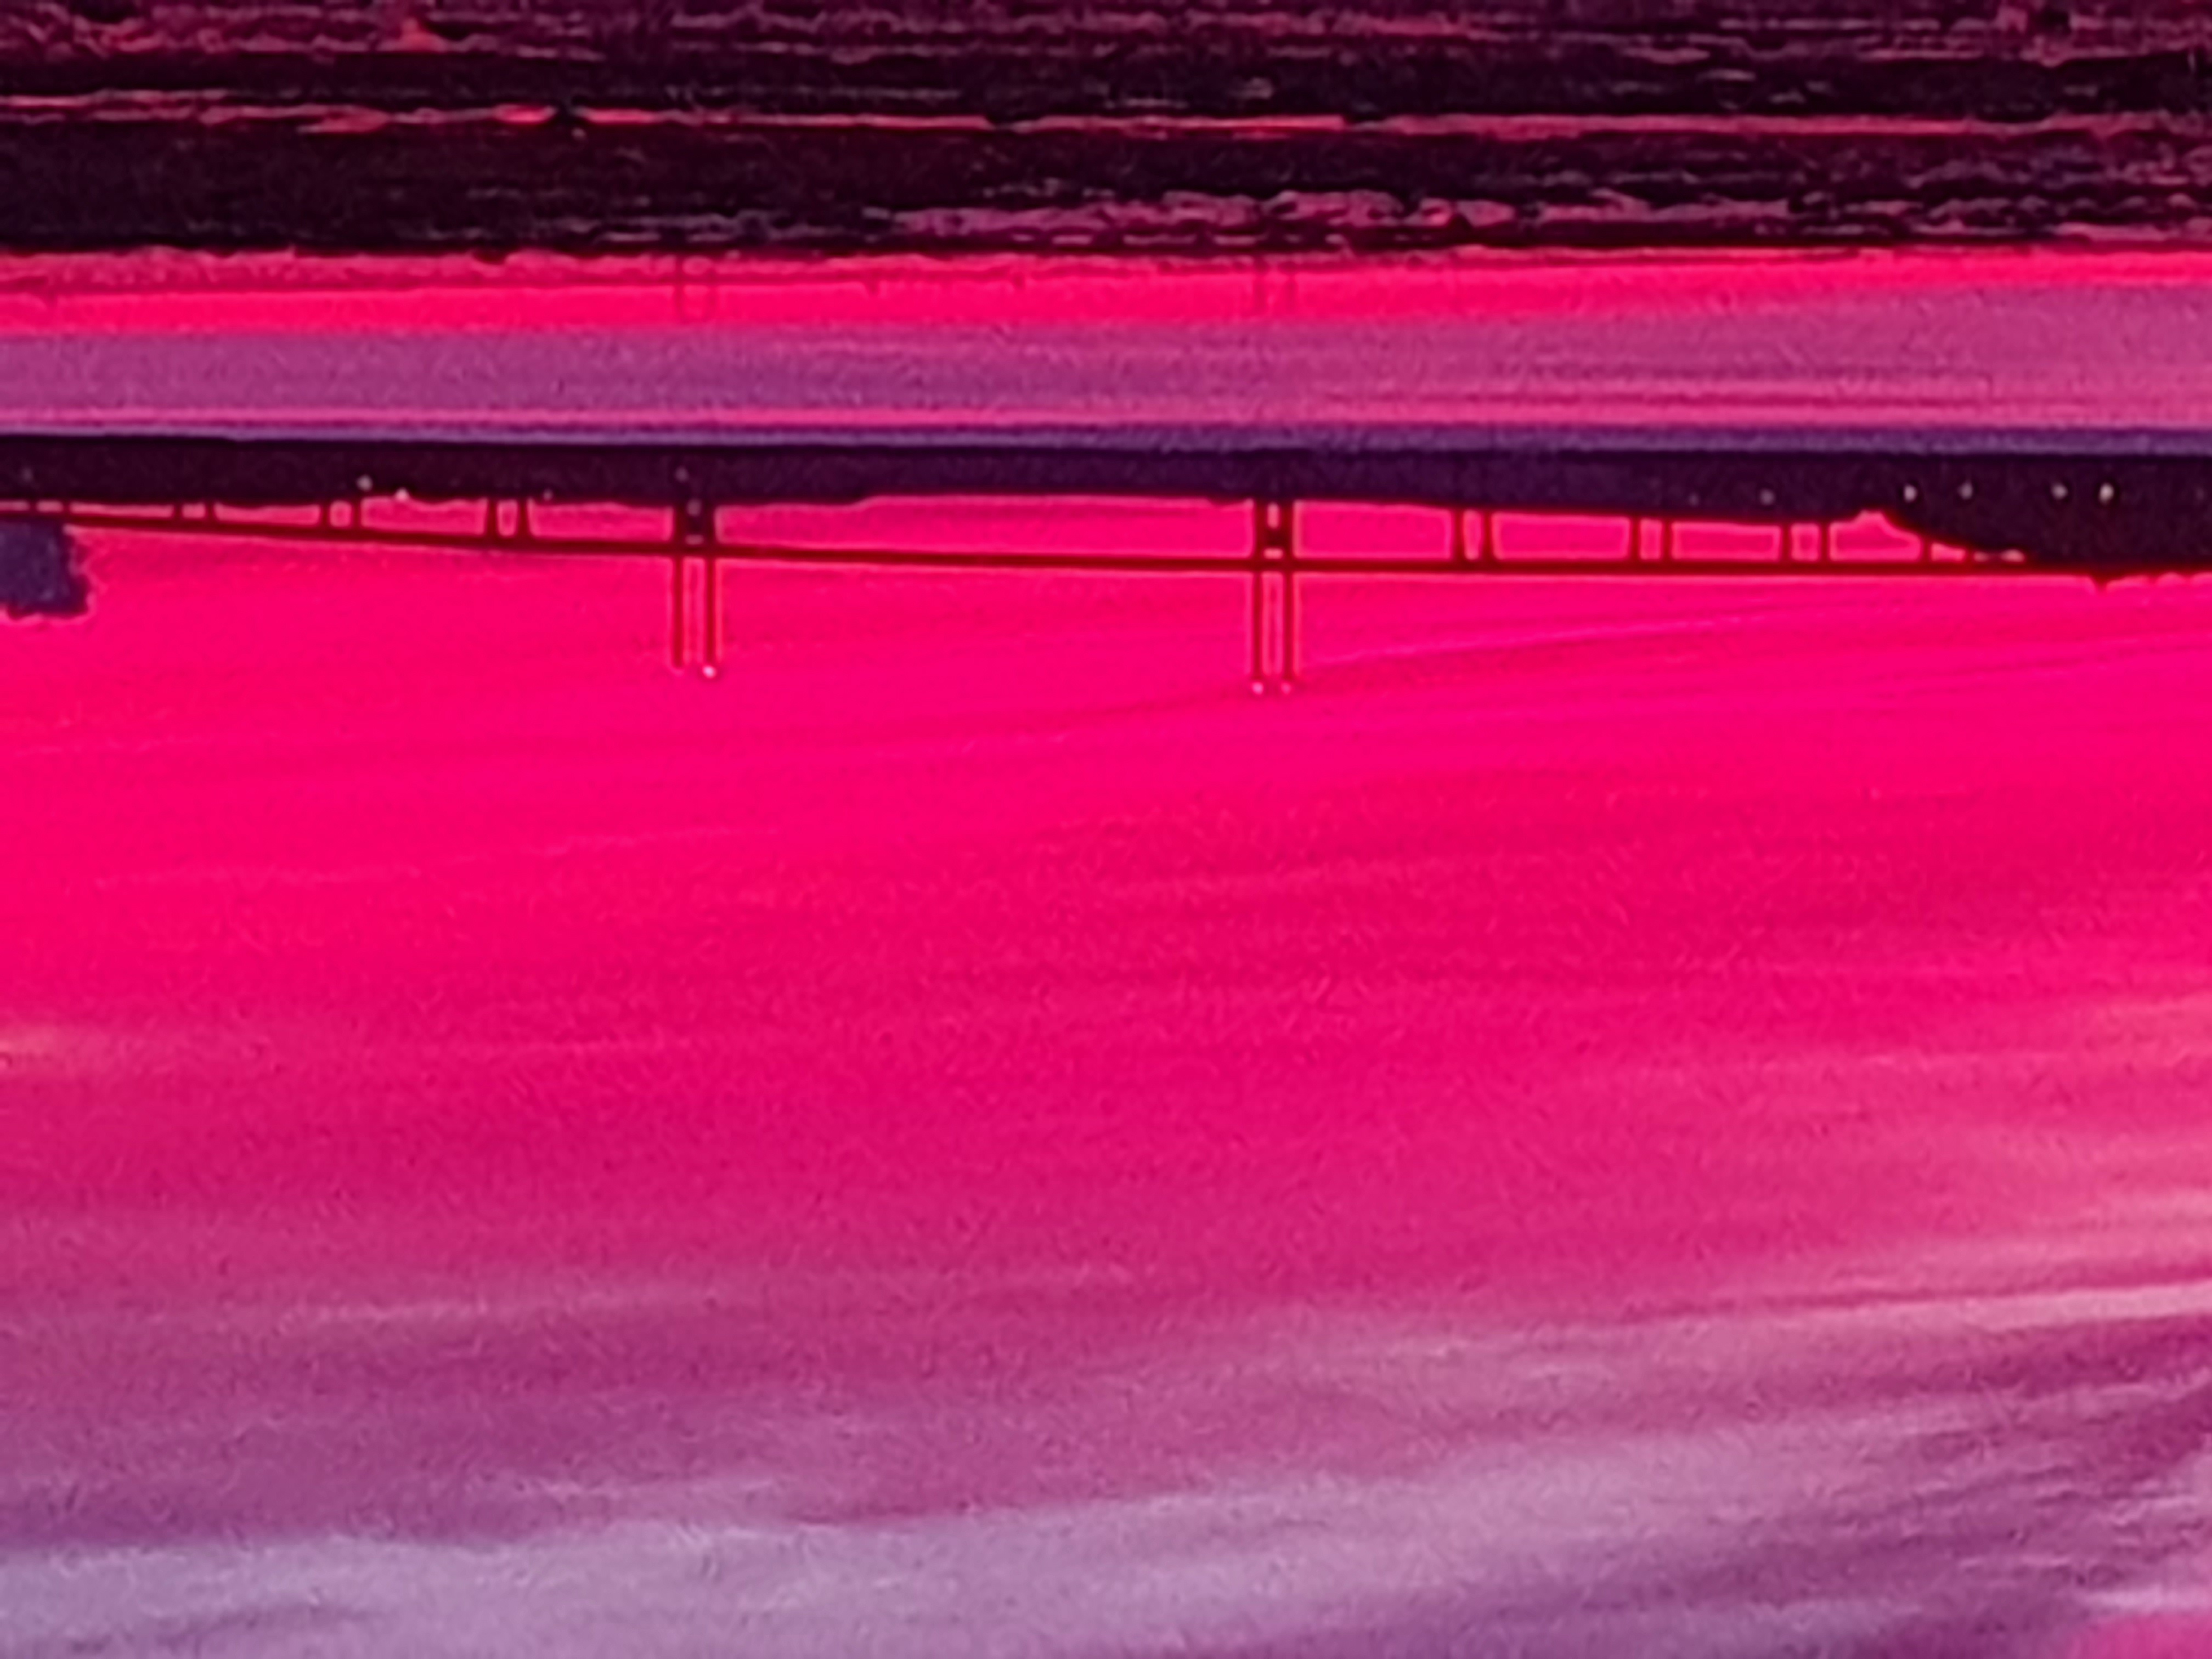 Kessock Bridge sunrise